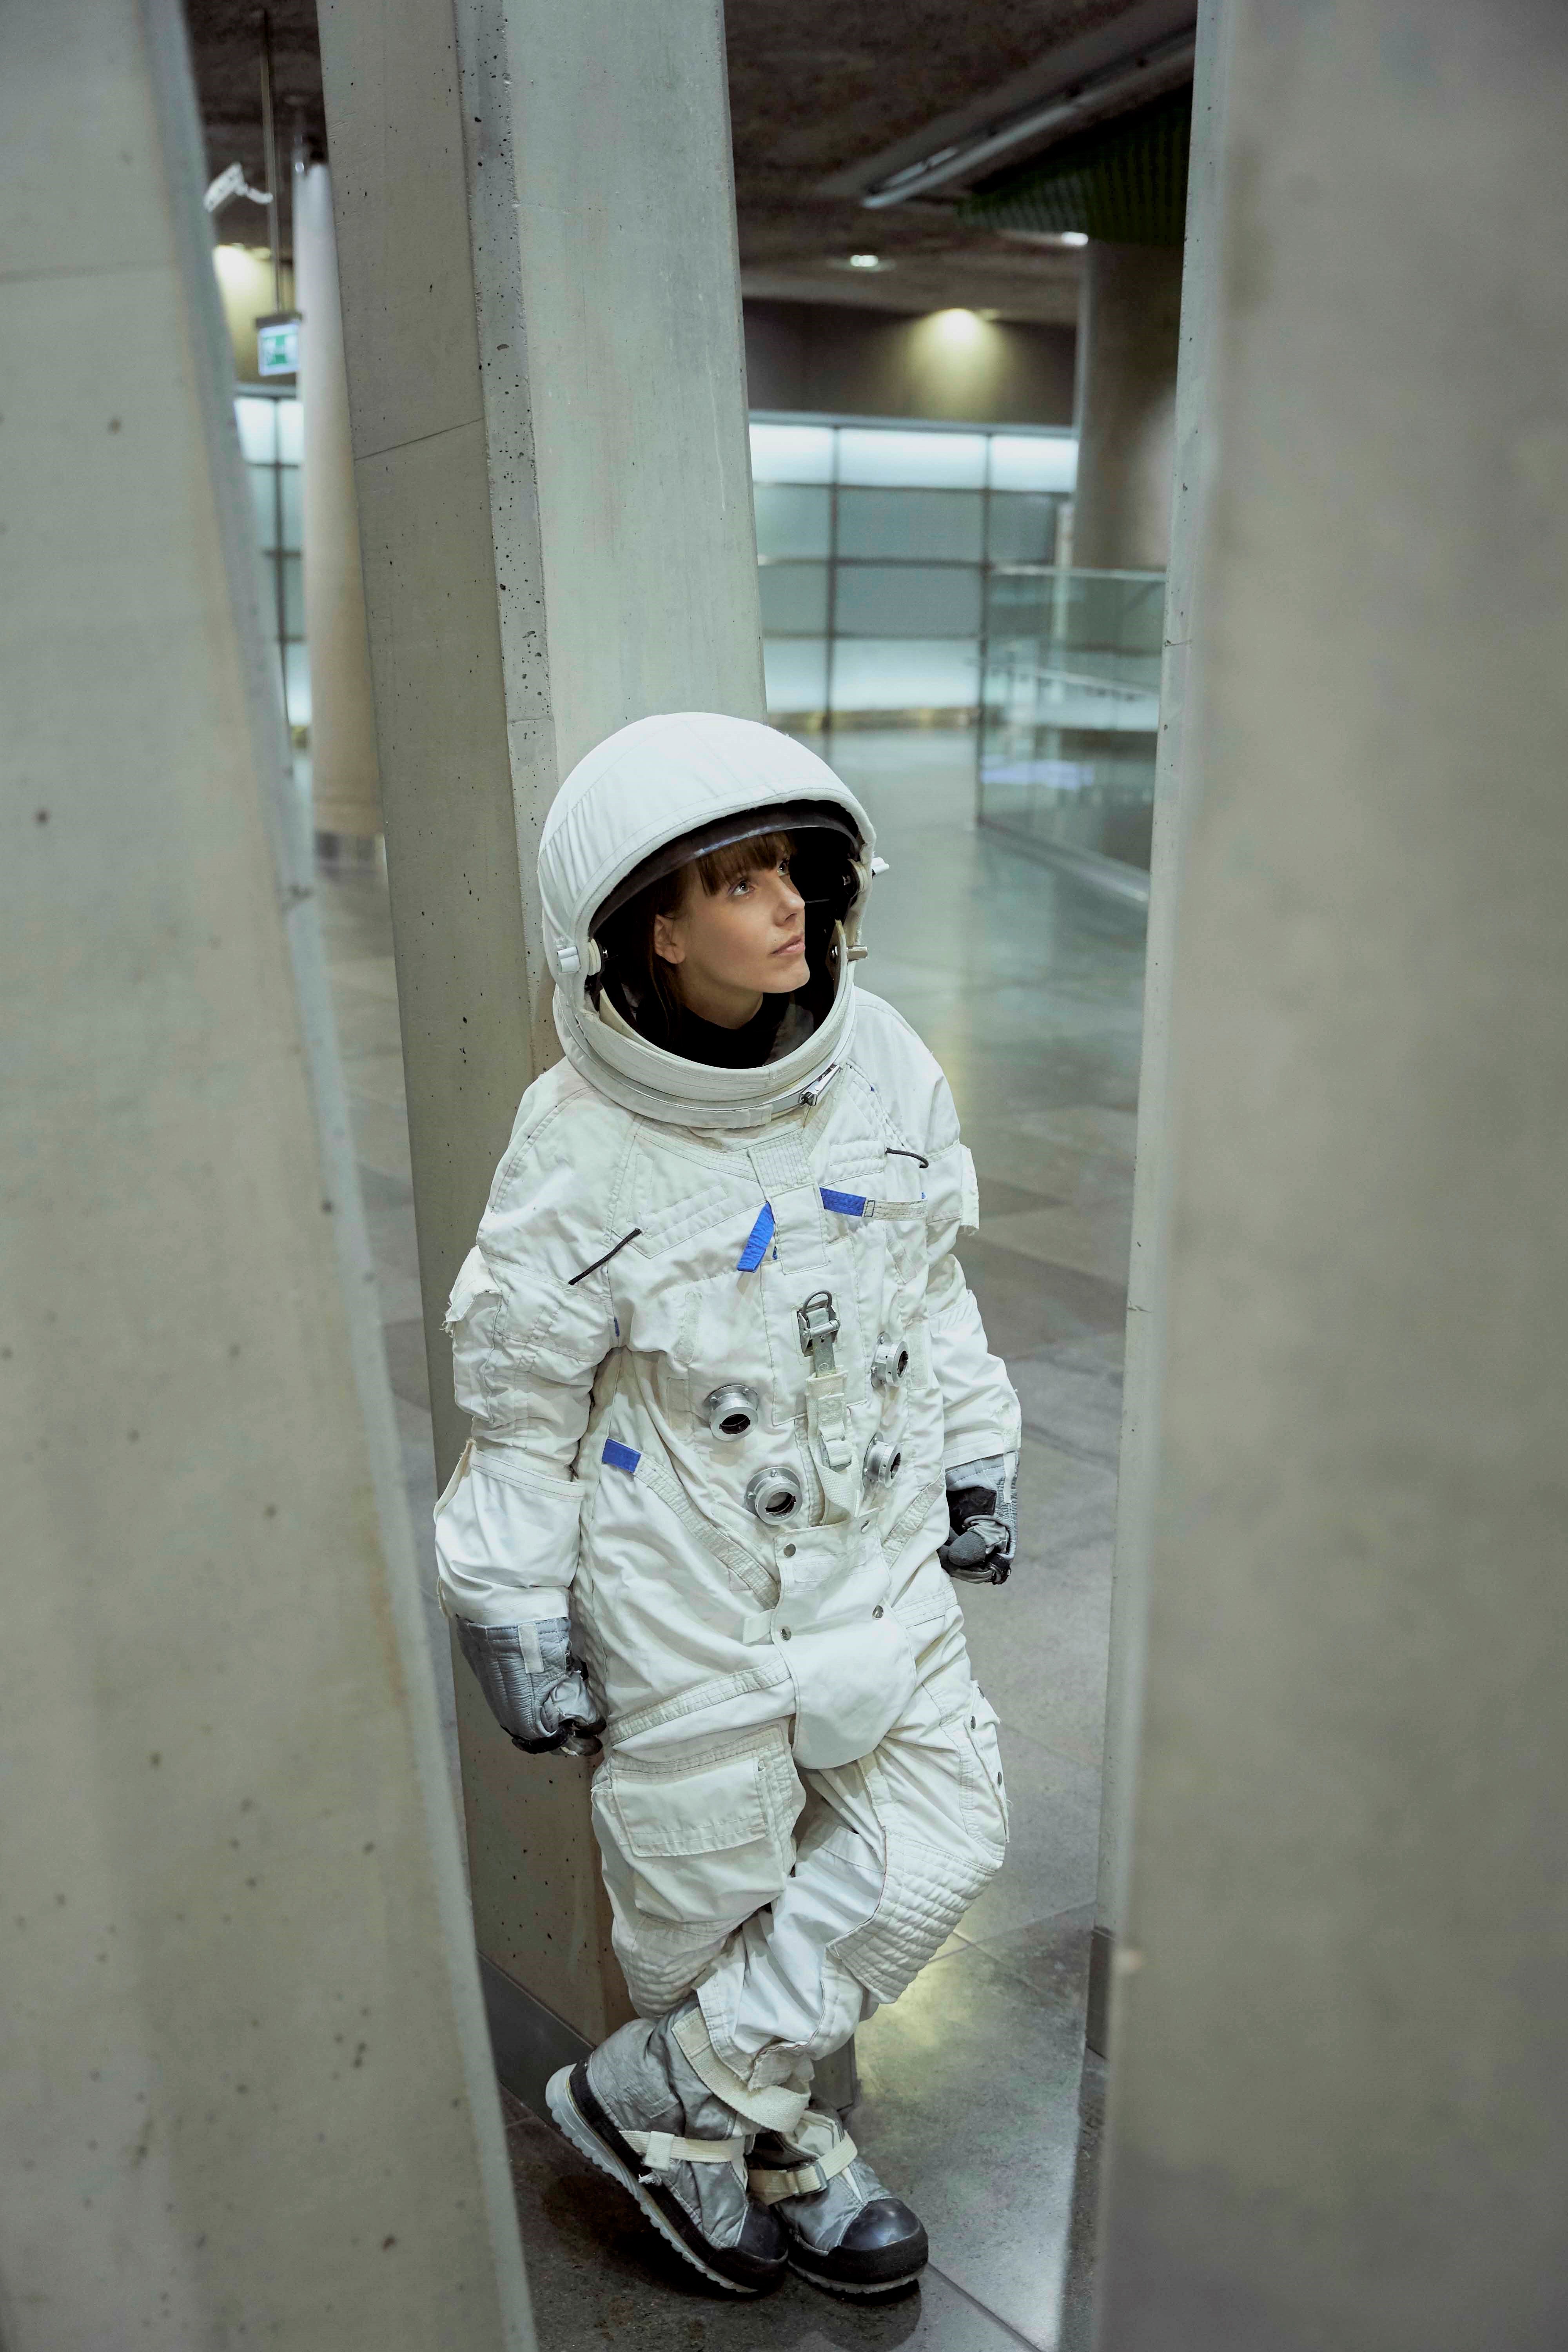 Bohaterka wywiadu ubrana w biały skafander astronauki wśród betonowych szarych kolumn.